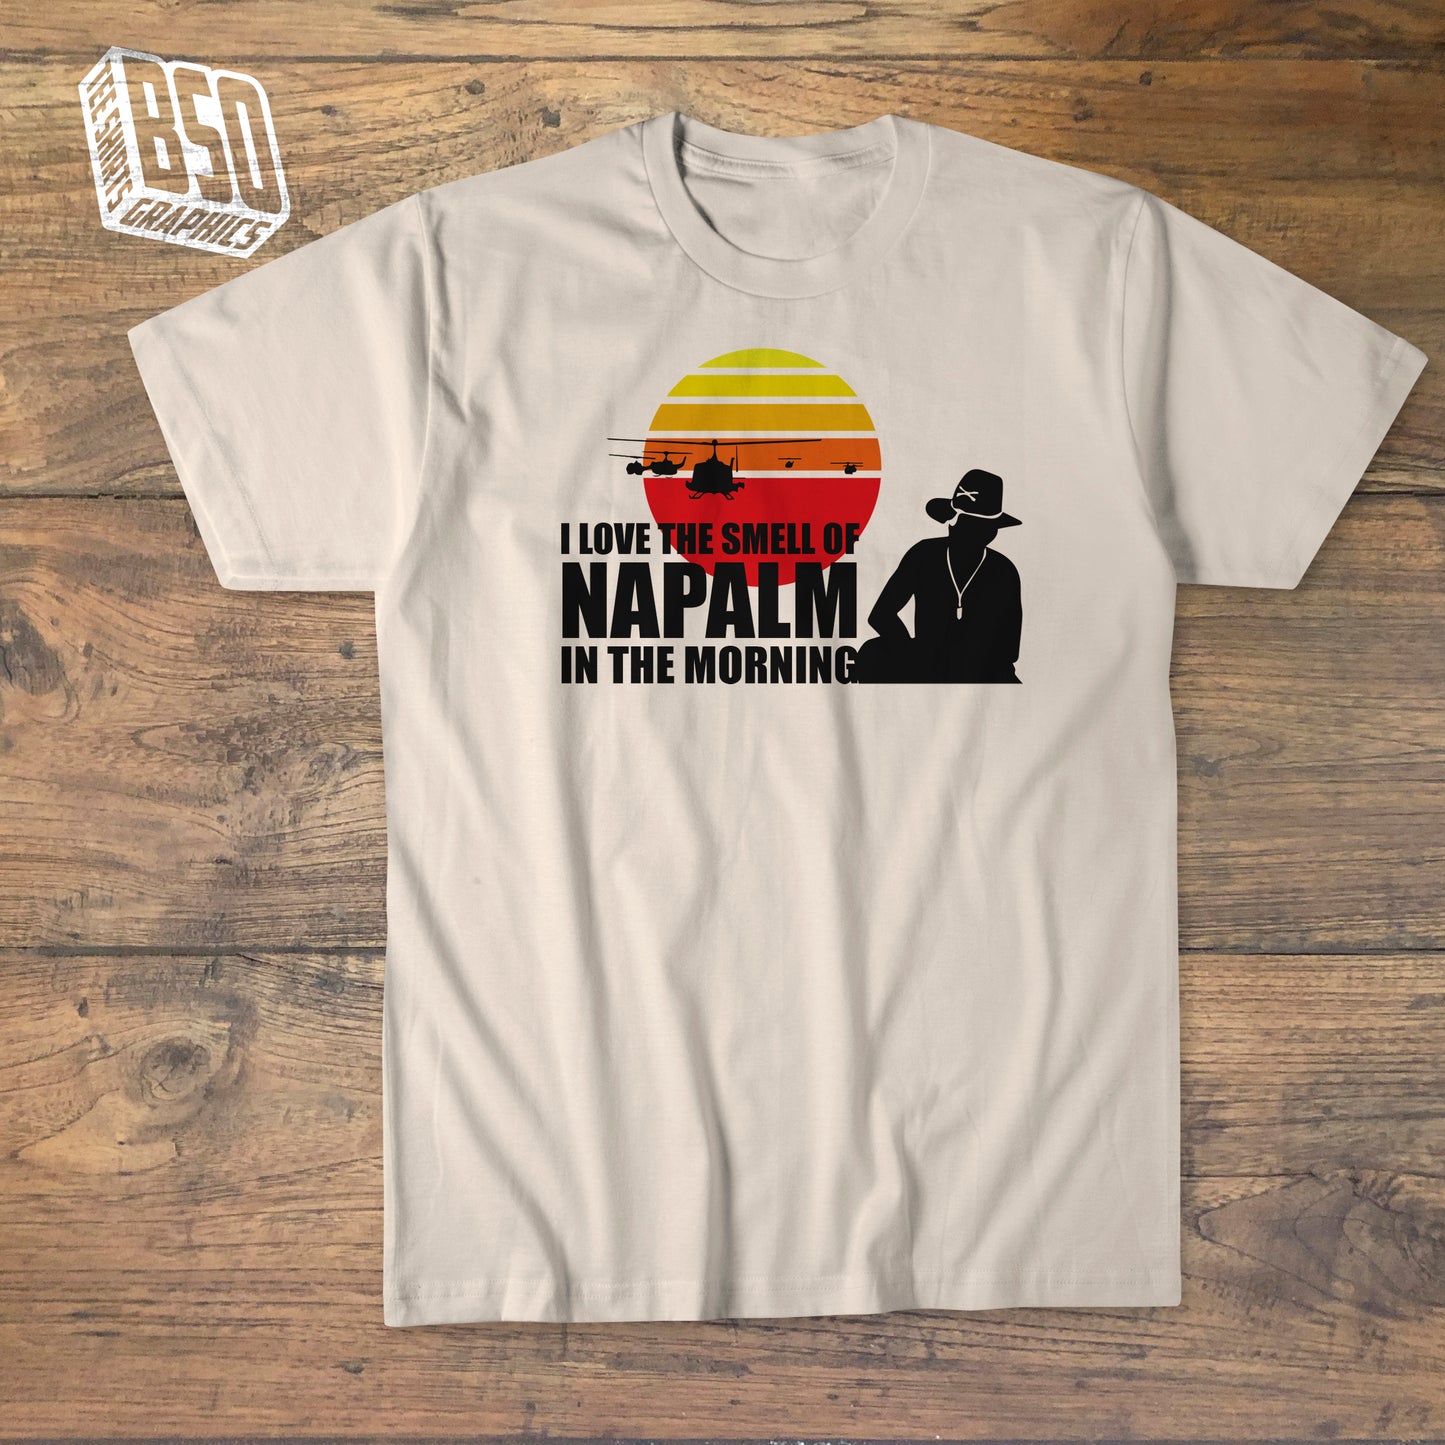 Tee-shirt "Apocalypse Now" (Phase II)